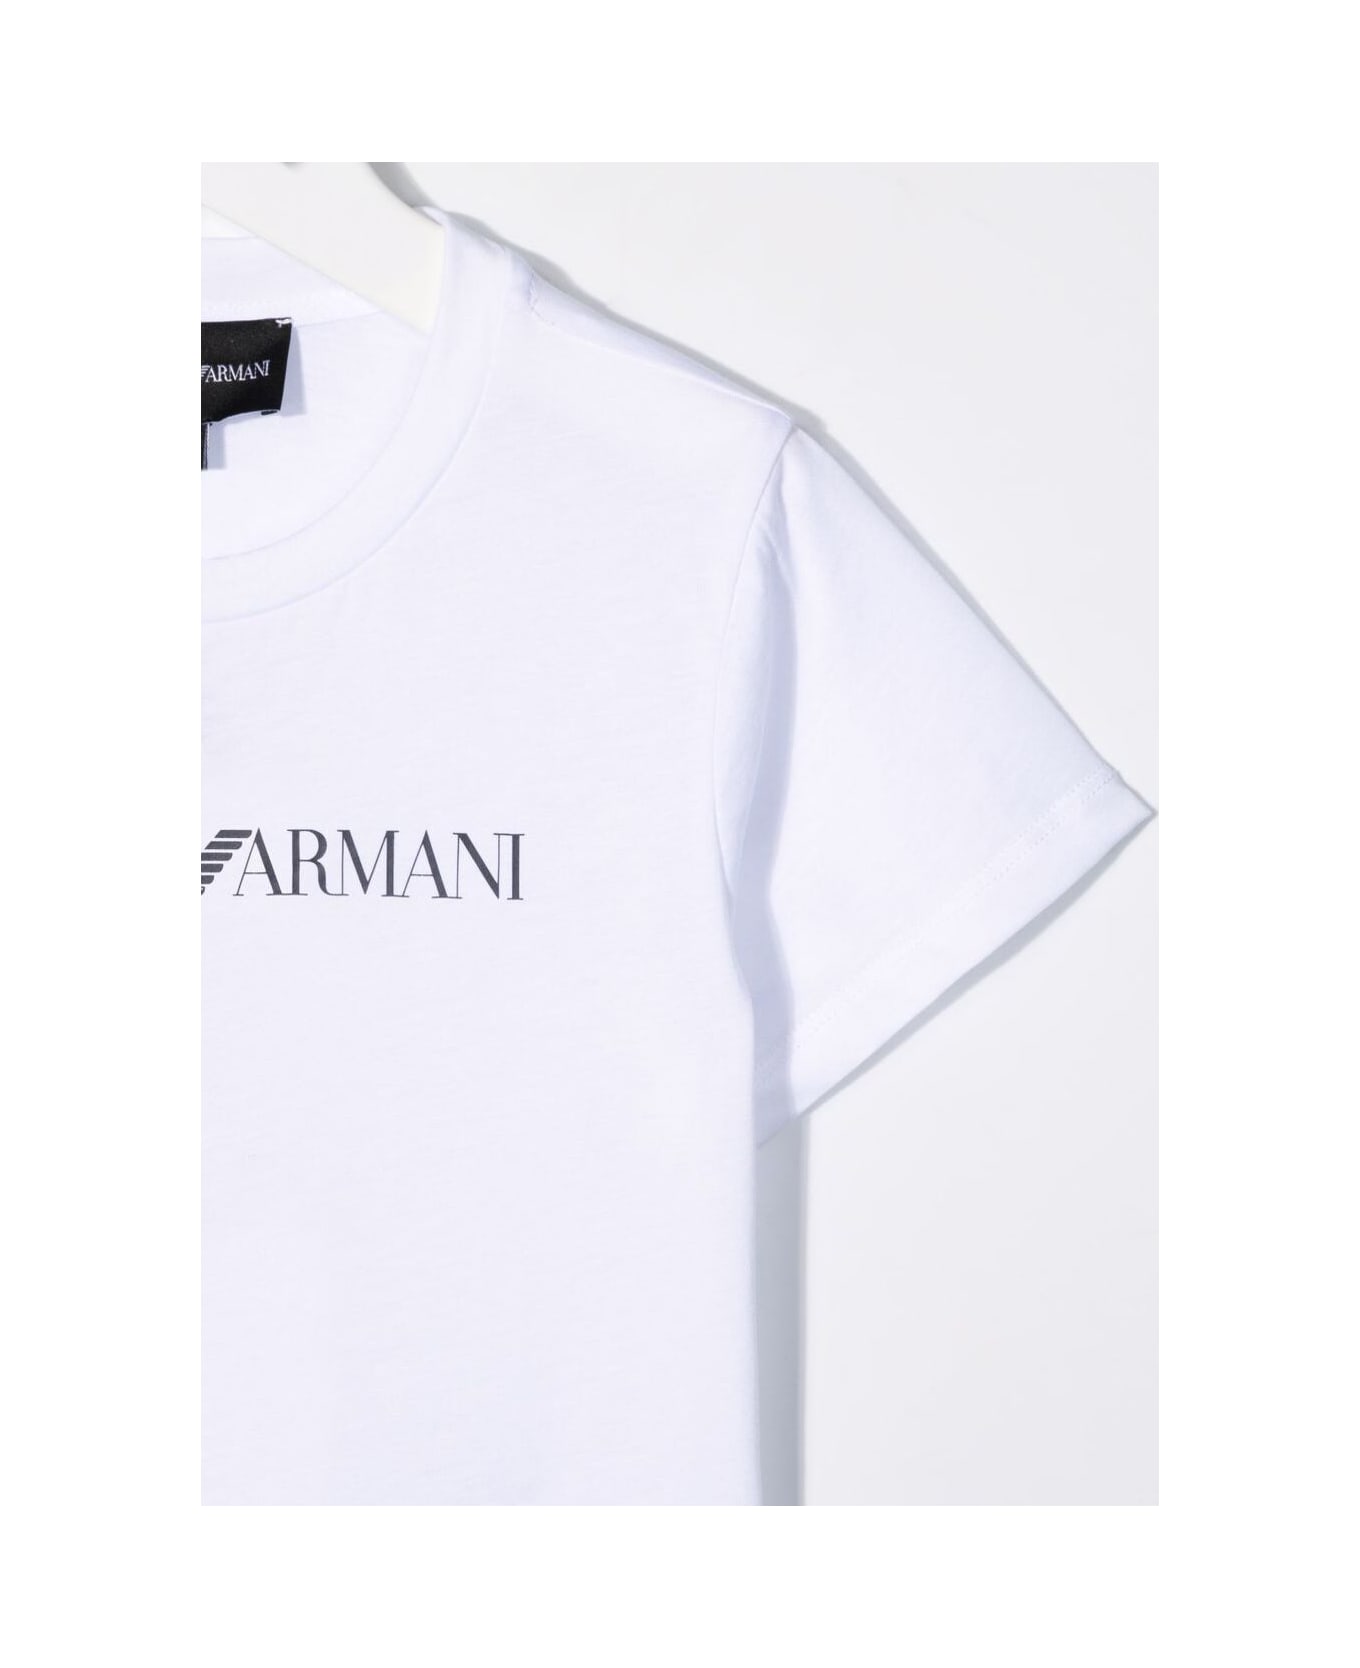 Emporio Armani White Round Neck T-shirt With Logo Print In Cotton Boy - WHITE